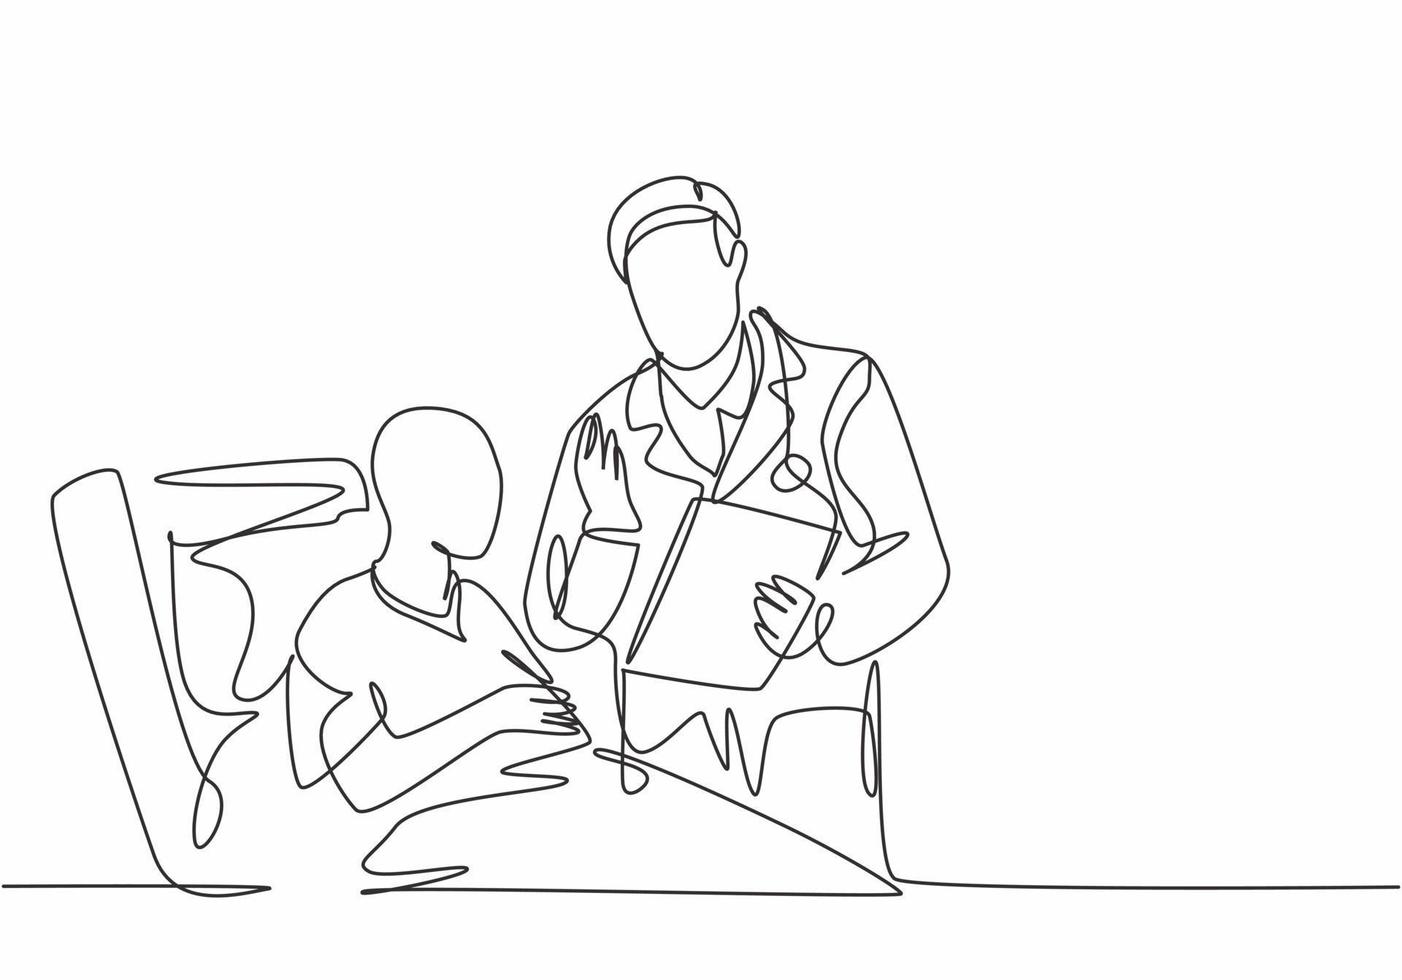 un disegno a tratteggio di un giovane medico maschio discute progressi positivi di salute con un vecchio malato di cancro che giace sul letto d'ospedale. concetto di assistenza medica illustrazione vettoriale di disegno di linea continua di disegno